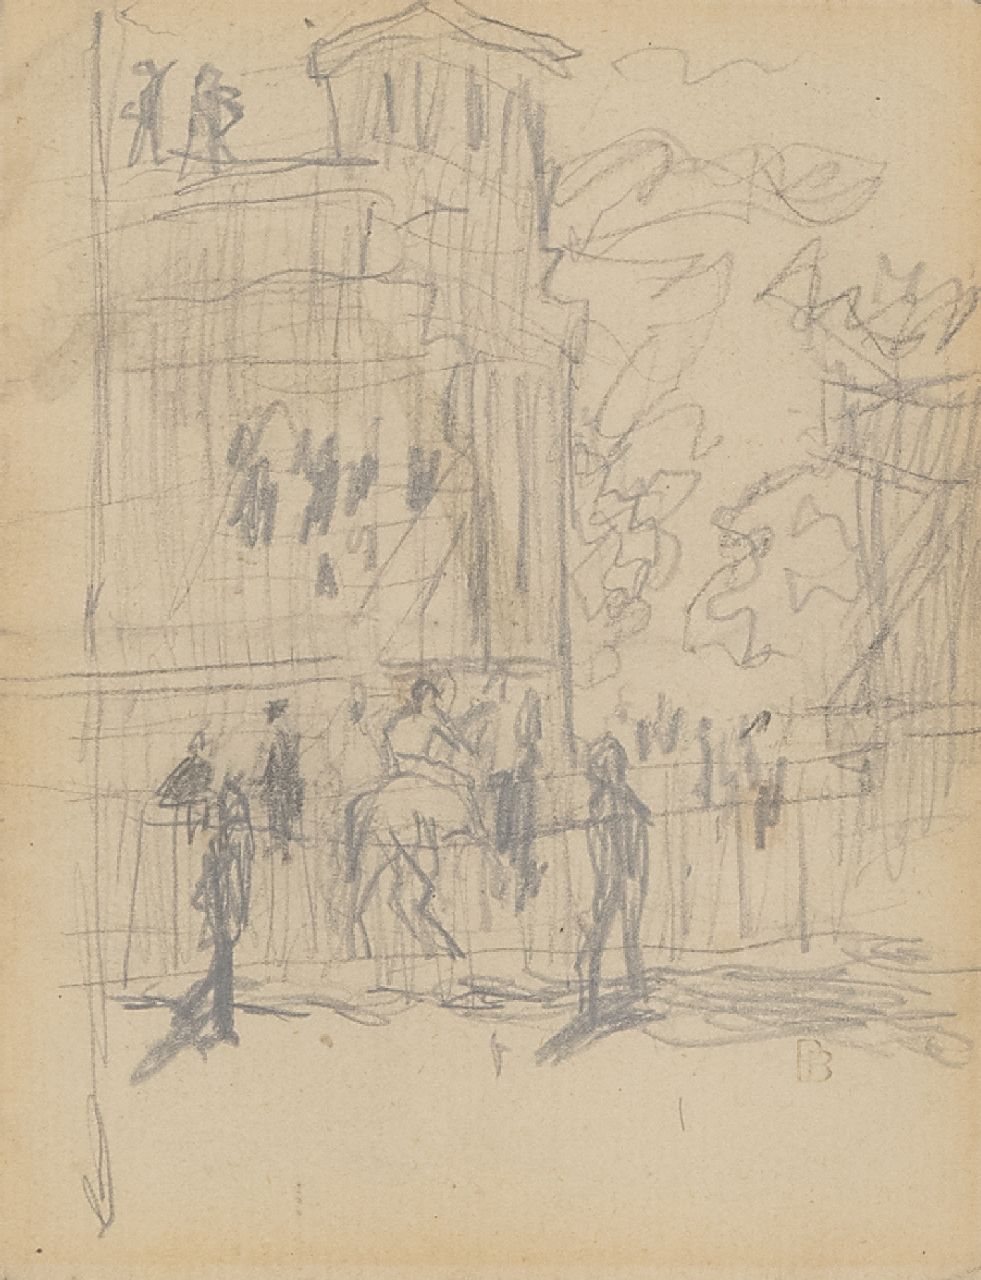 Bonnard P.E.F.  | 'Pierre' Eugène Frédéric Bonnard | Aquarellen en tekeningen te koop aangeboden | Op de renbaan, potlood op papier 11,0 x 8,5 cm, gesigneerd rechtsonder met stempel